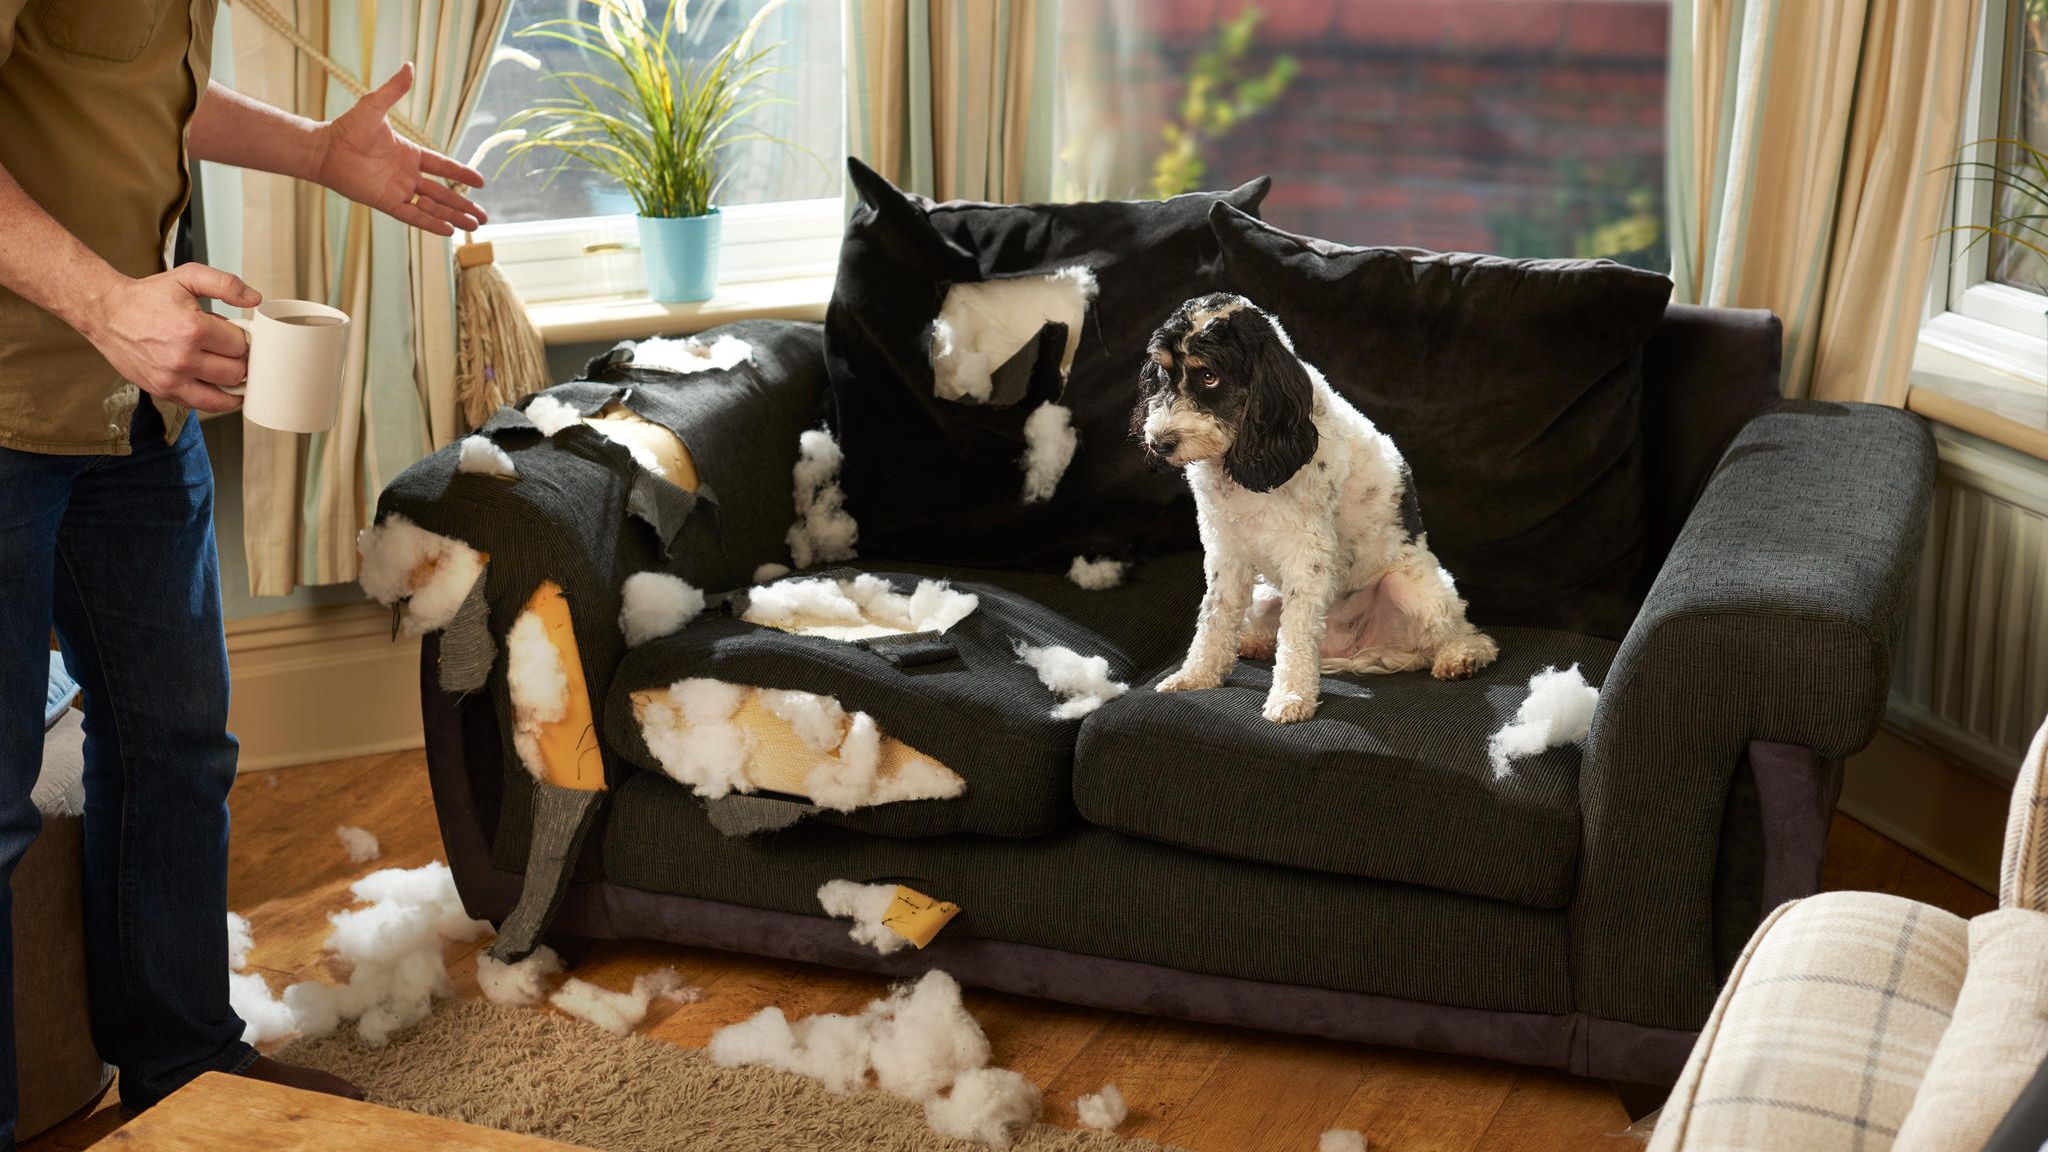 Lifehacks für Tiere: Wie Hunde Zähne putzen und Katzen Möbel schonen